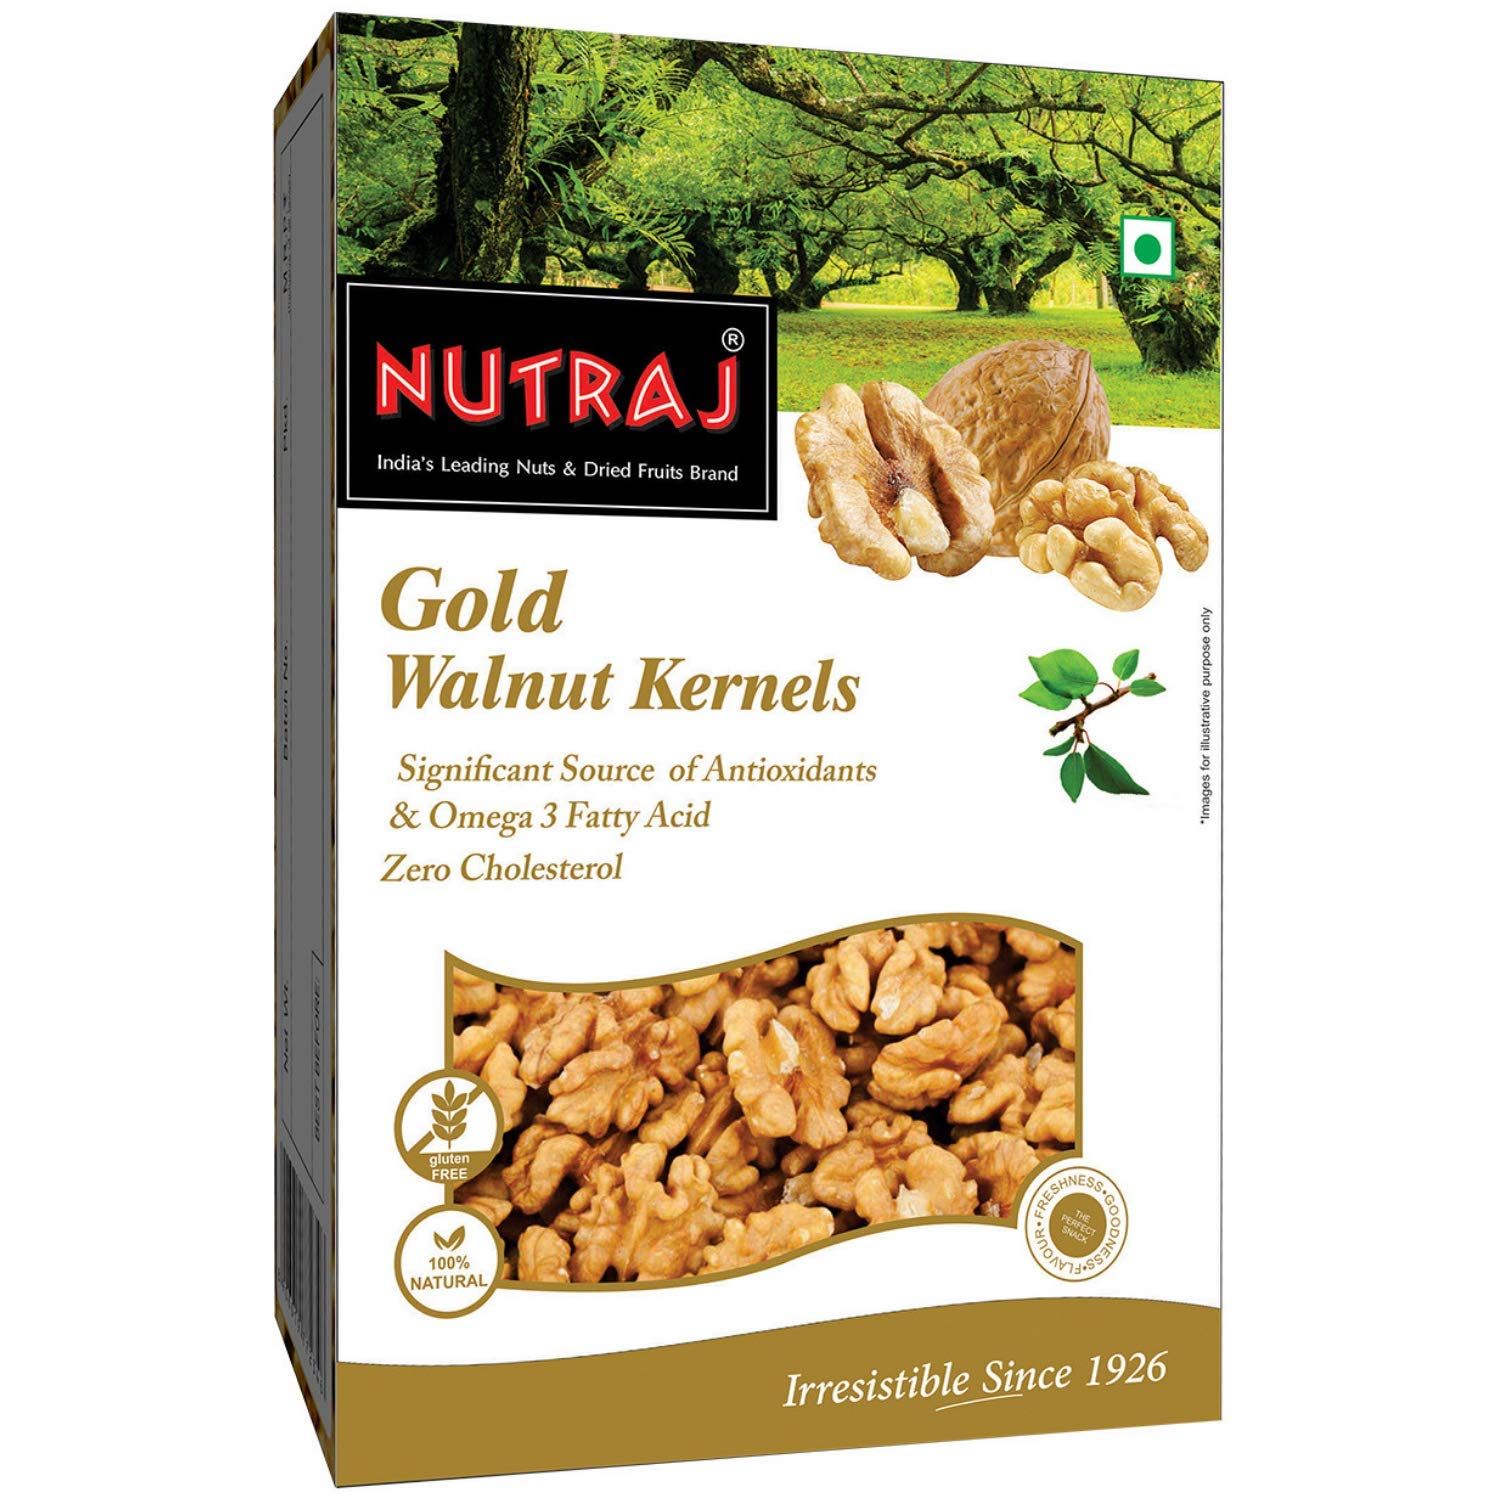 Nutraj Gold Walnut Kernels Image